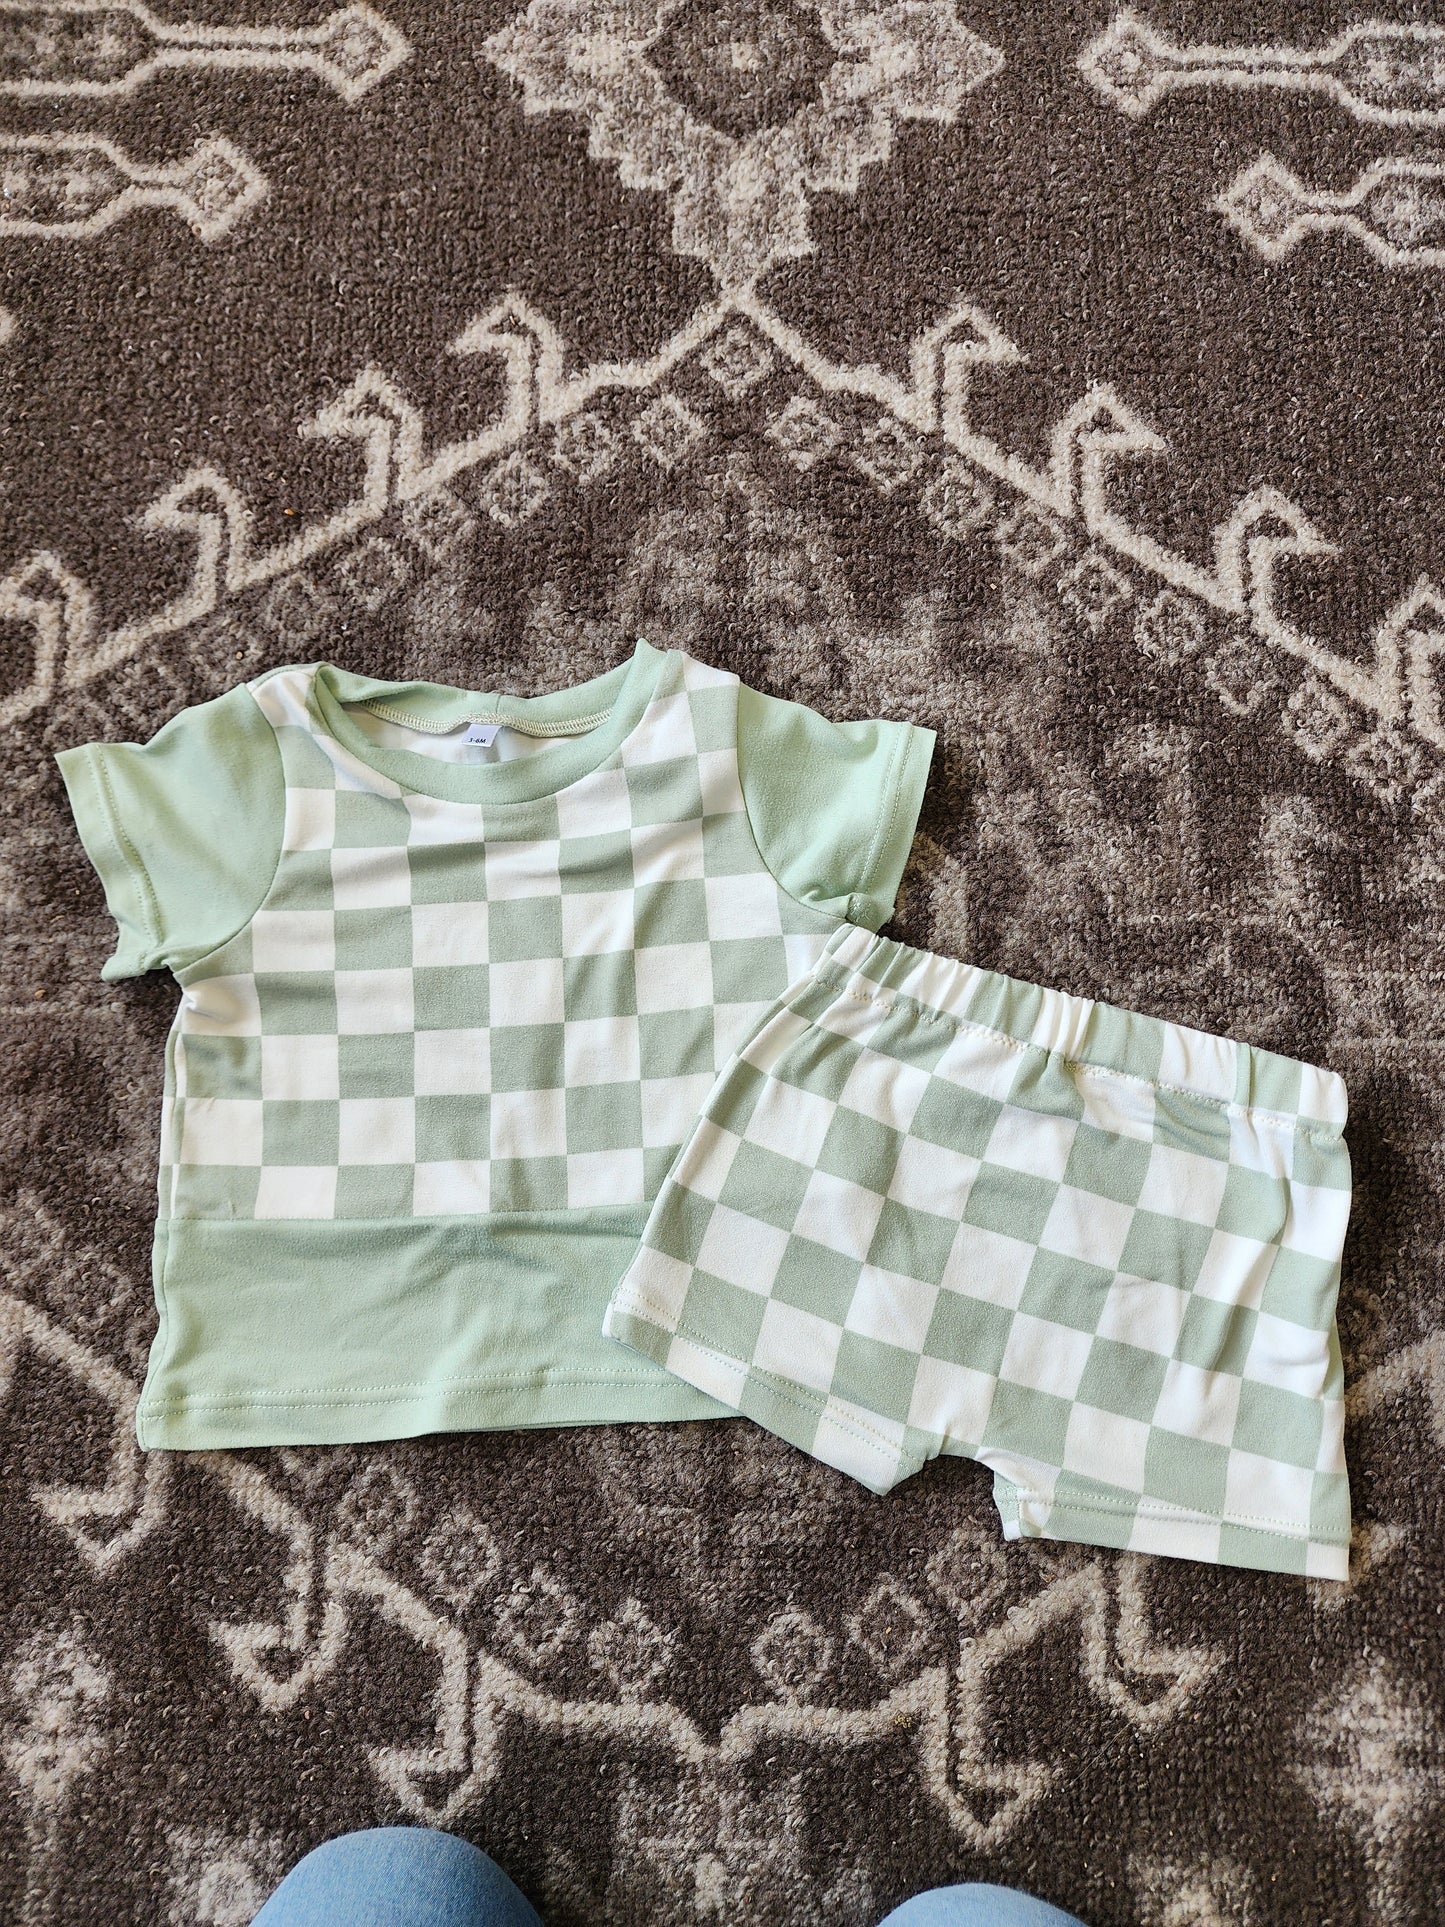 Mint Green Checkered Set